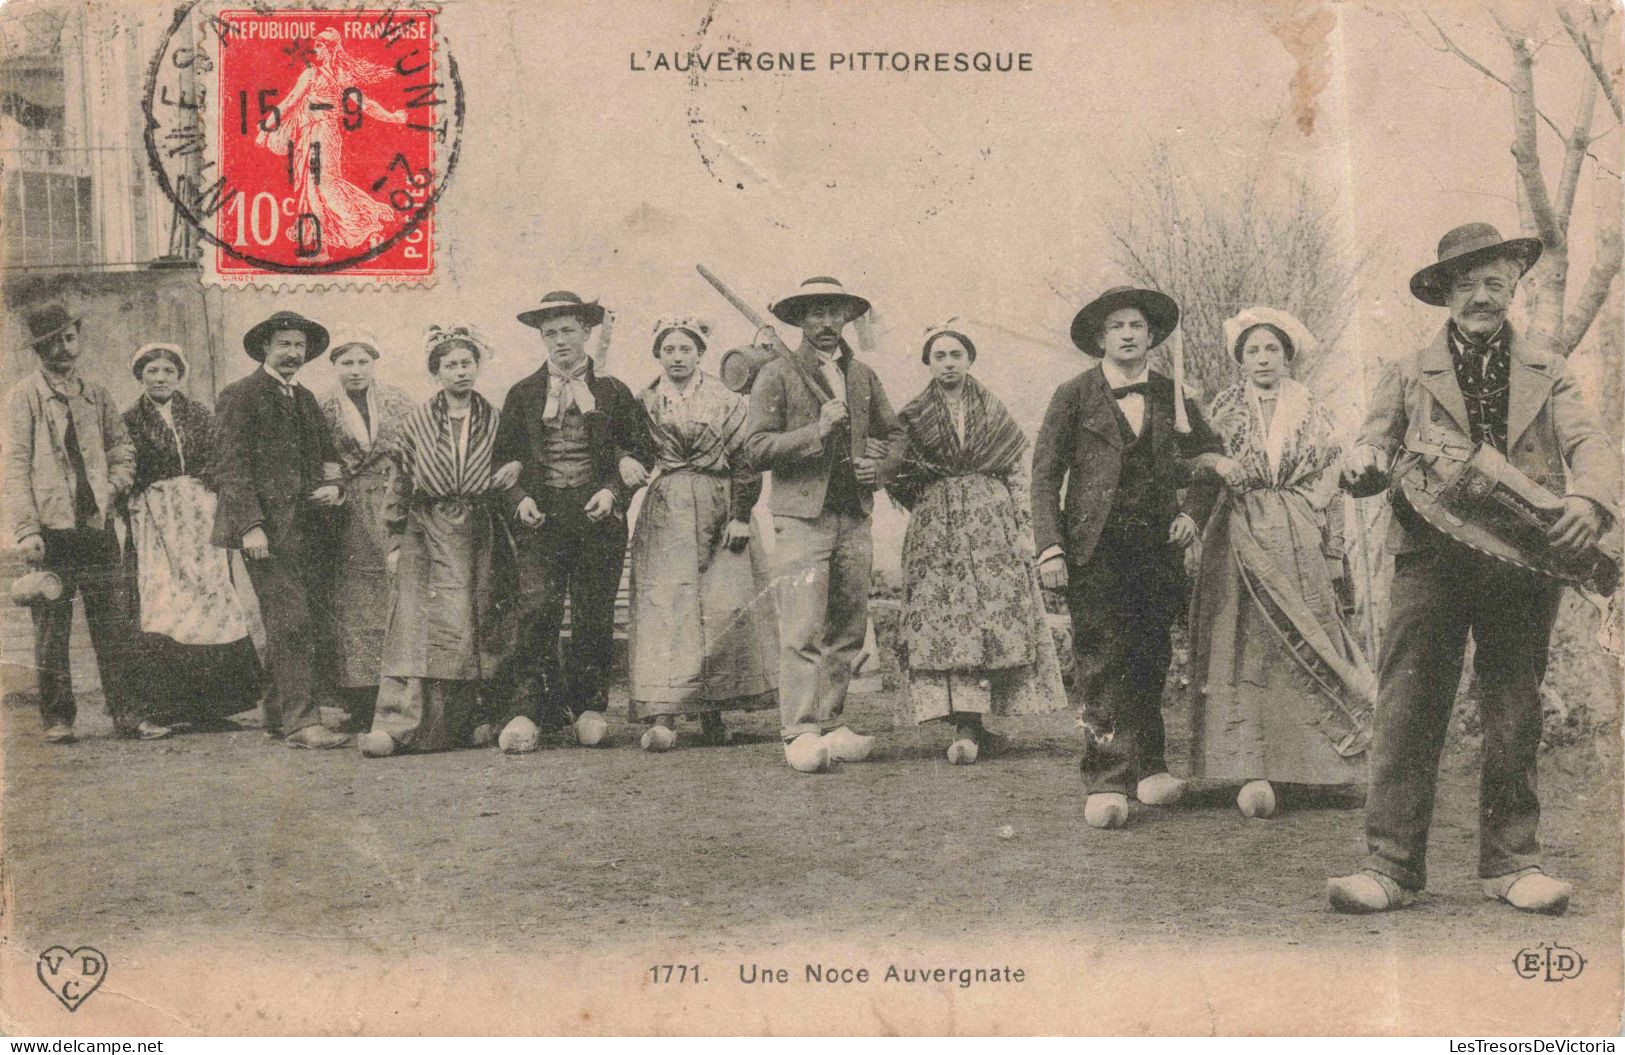 PHOTOGRAPHIE - Une Noce Auvergnate - L'Auvergne Pittoresque - Carte Postale Ancienne - Photographie